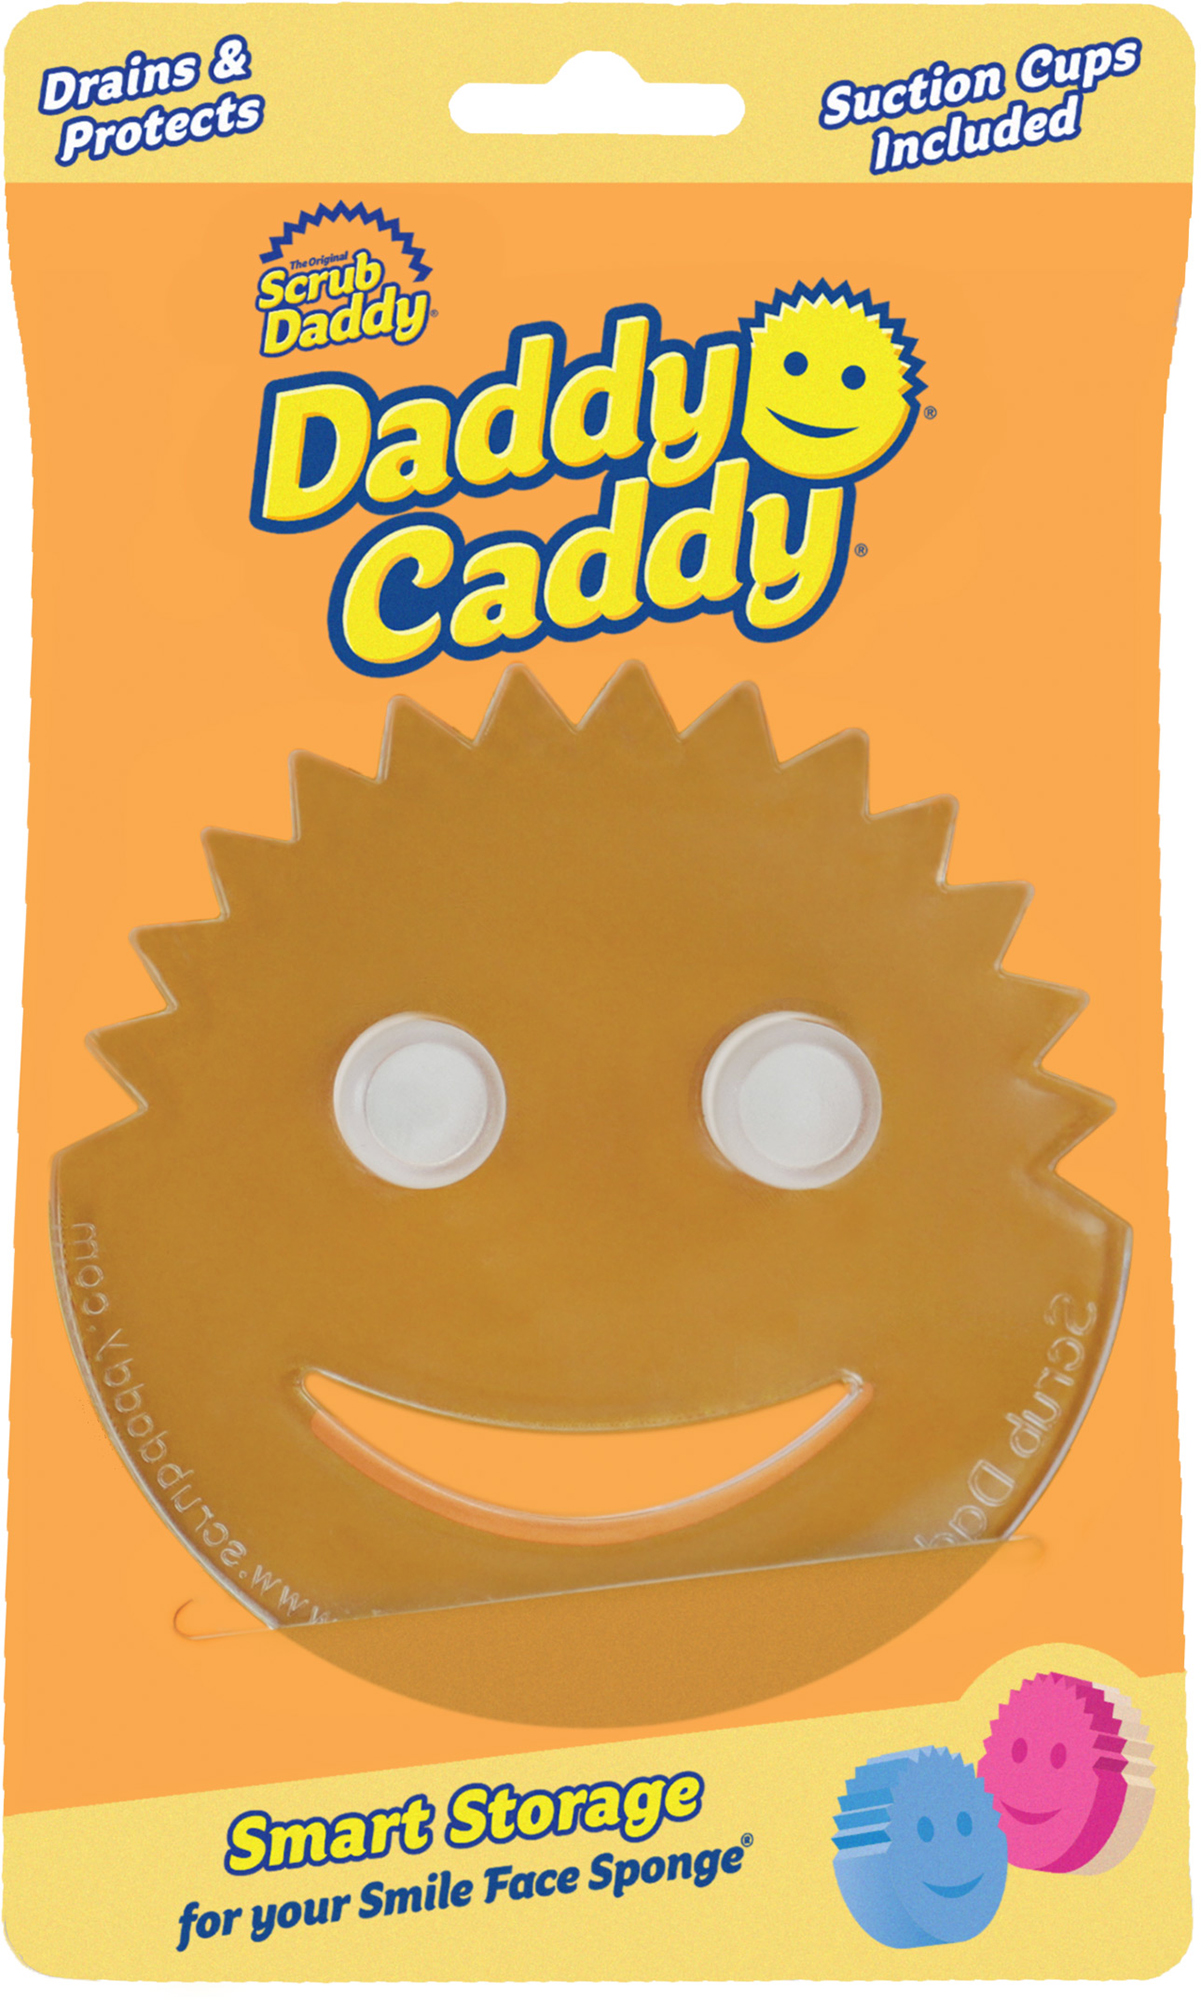 Daddy Caddy, Scrub Daddy